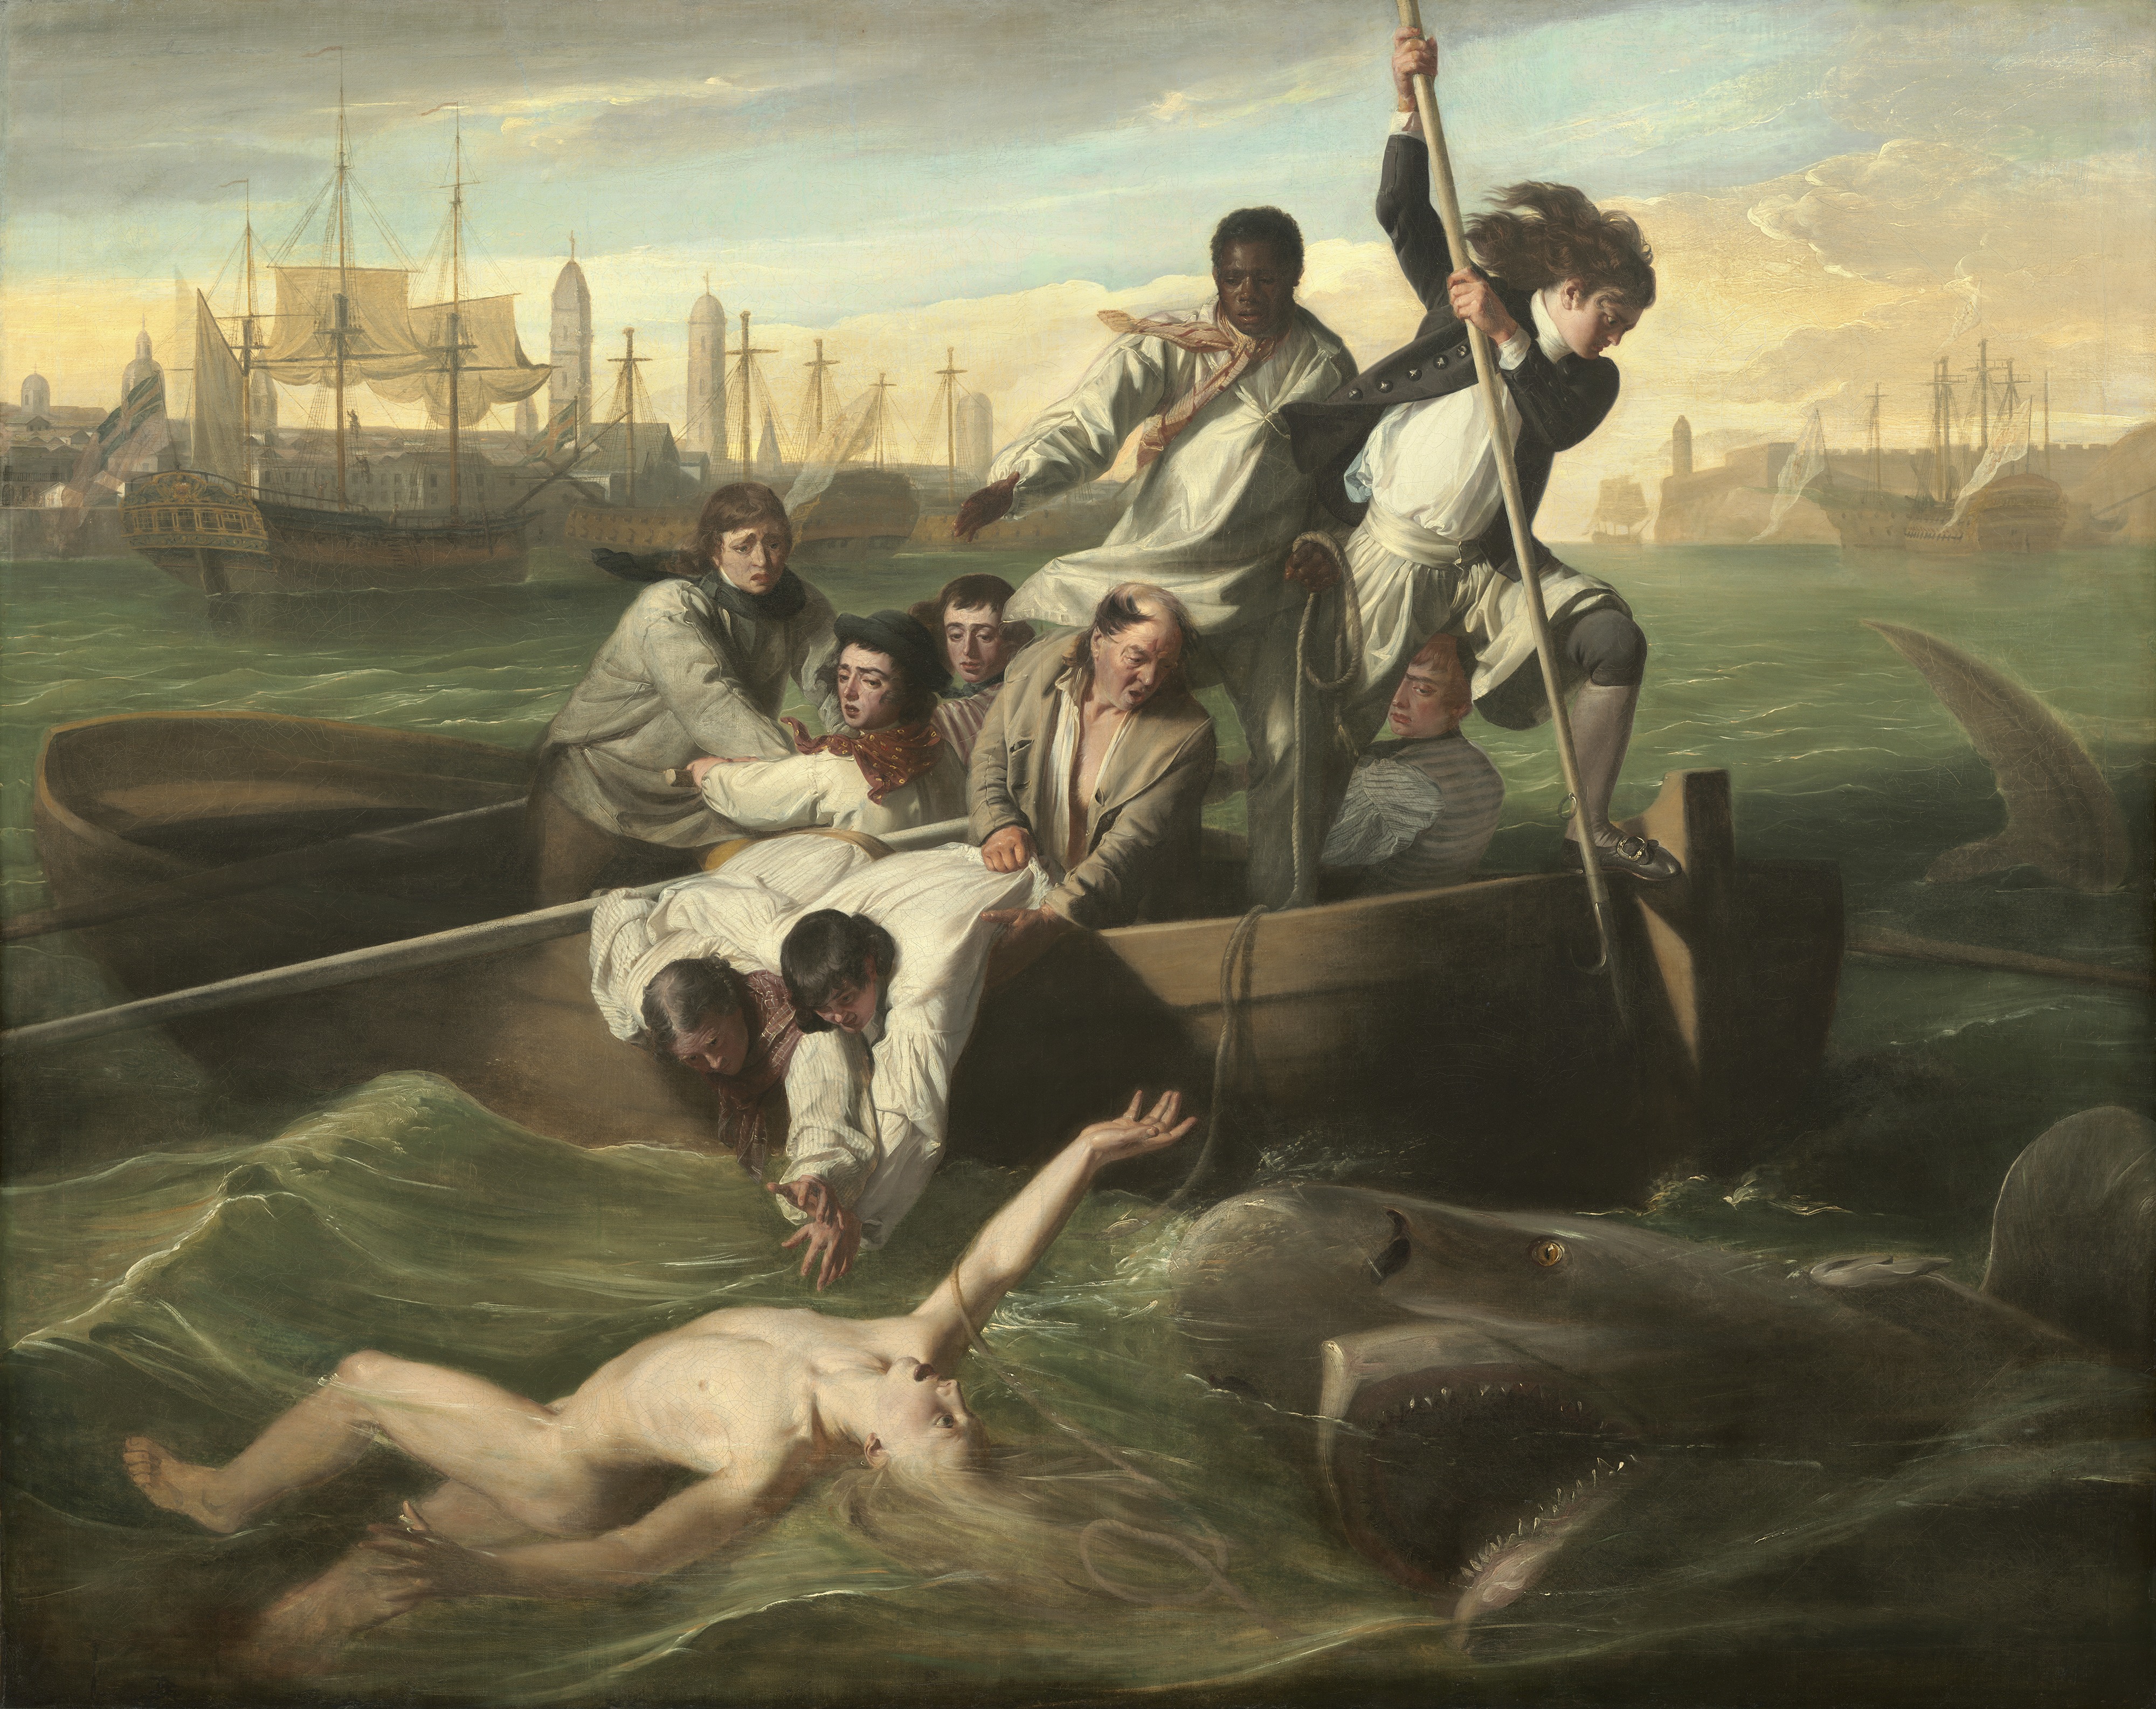 沃森與鯊魚 by John Singleton Copley - 1778 